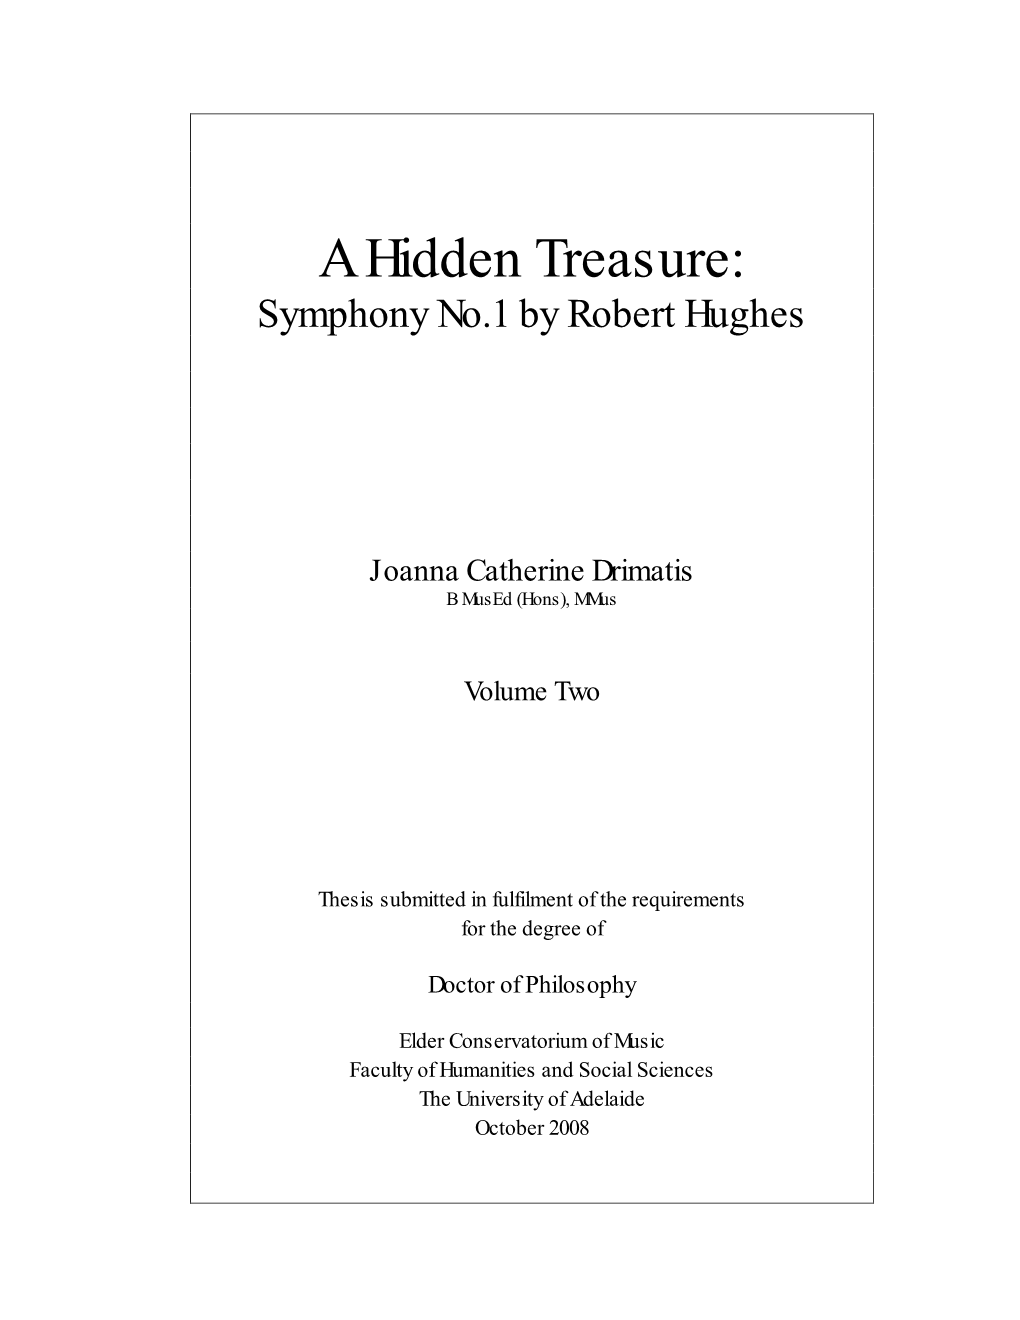 A Hidden Treasure: Symphony No.1 by Robert Hughes